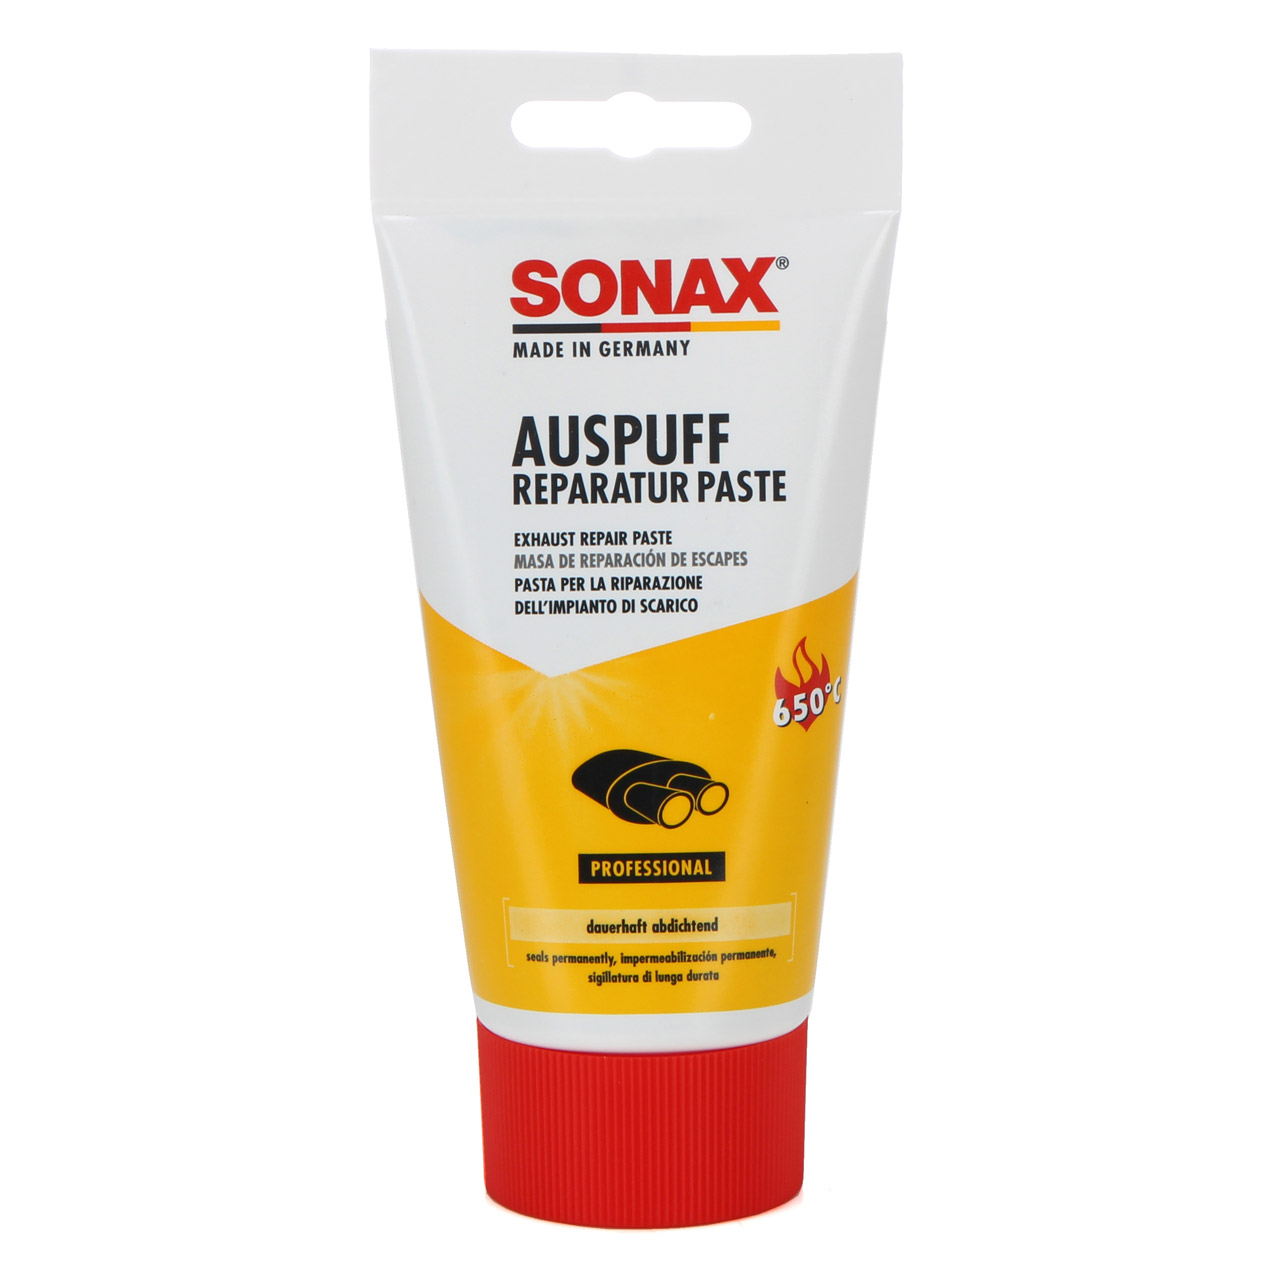 SONAX Auspuffreparaturpaste Auspuff-Reparatur-Paste 200g 553100